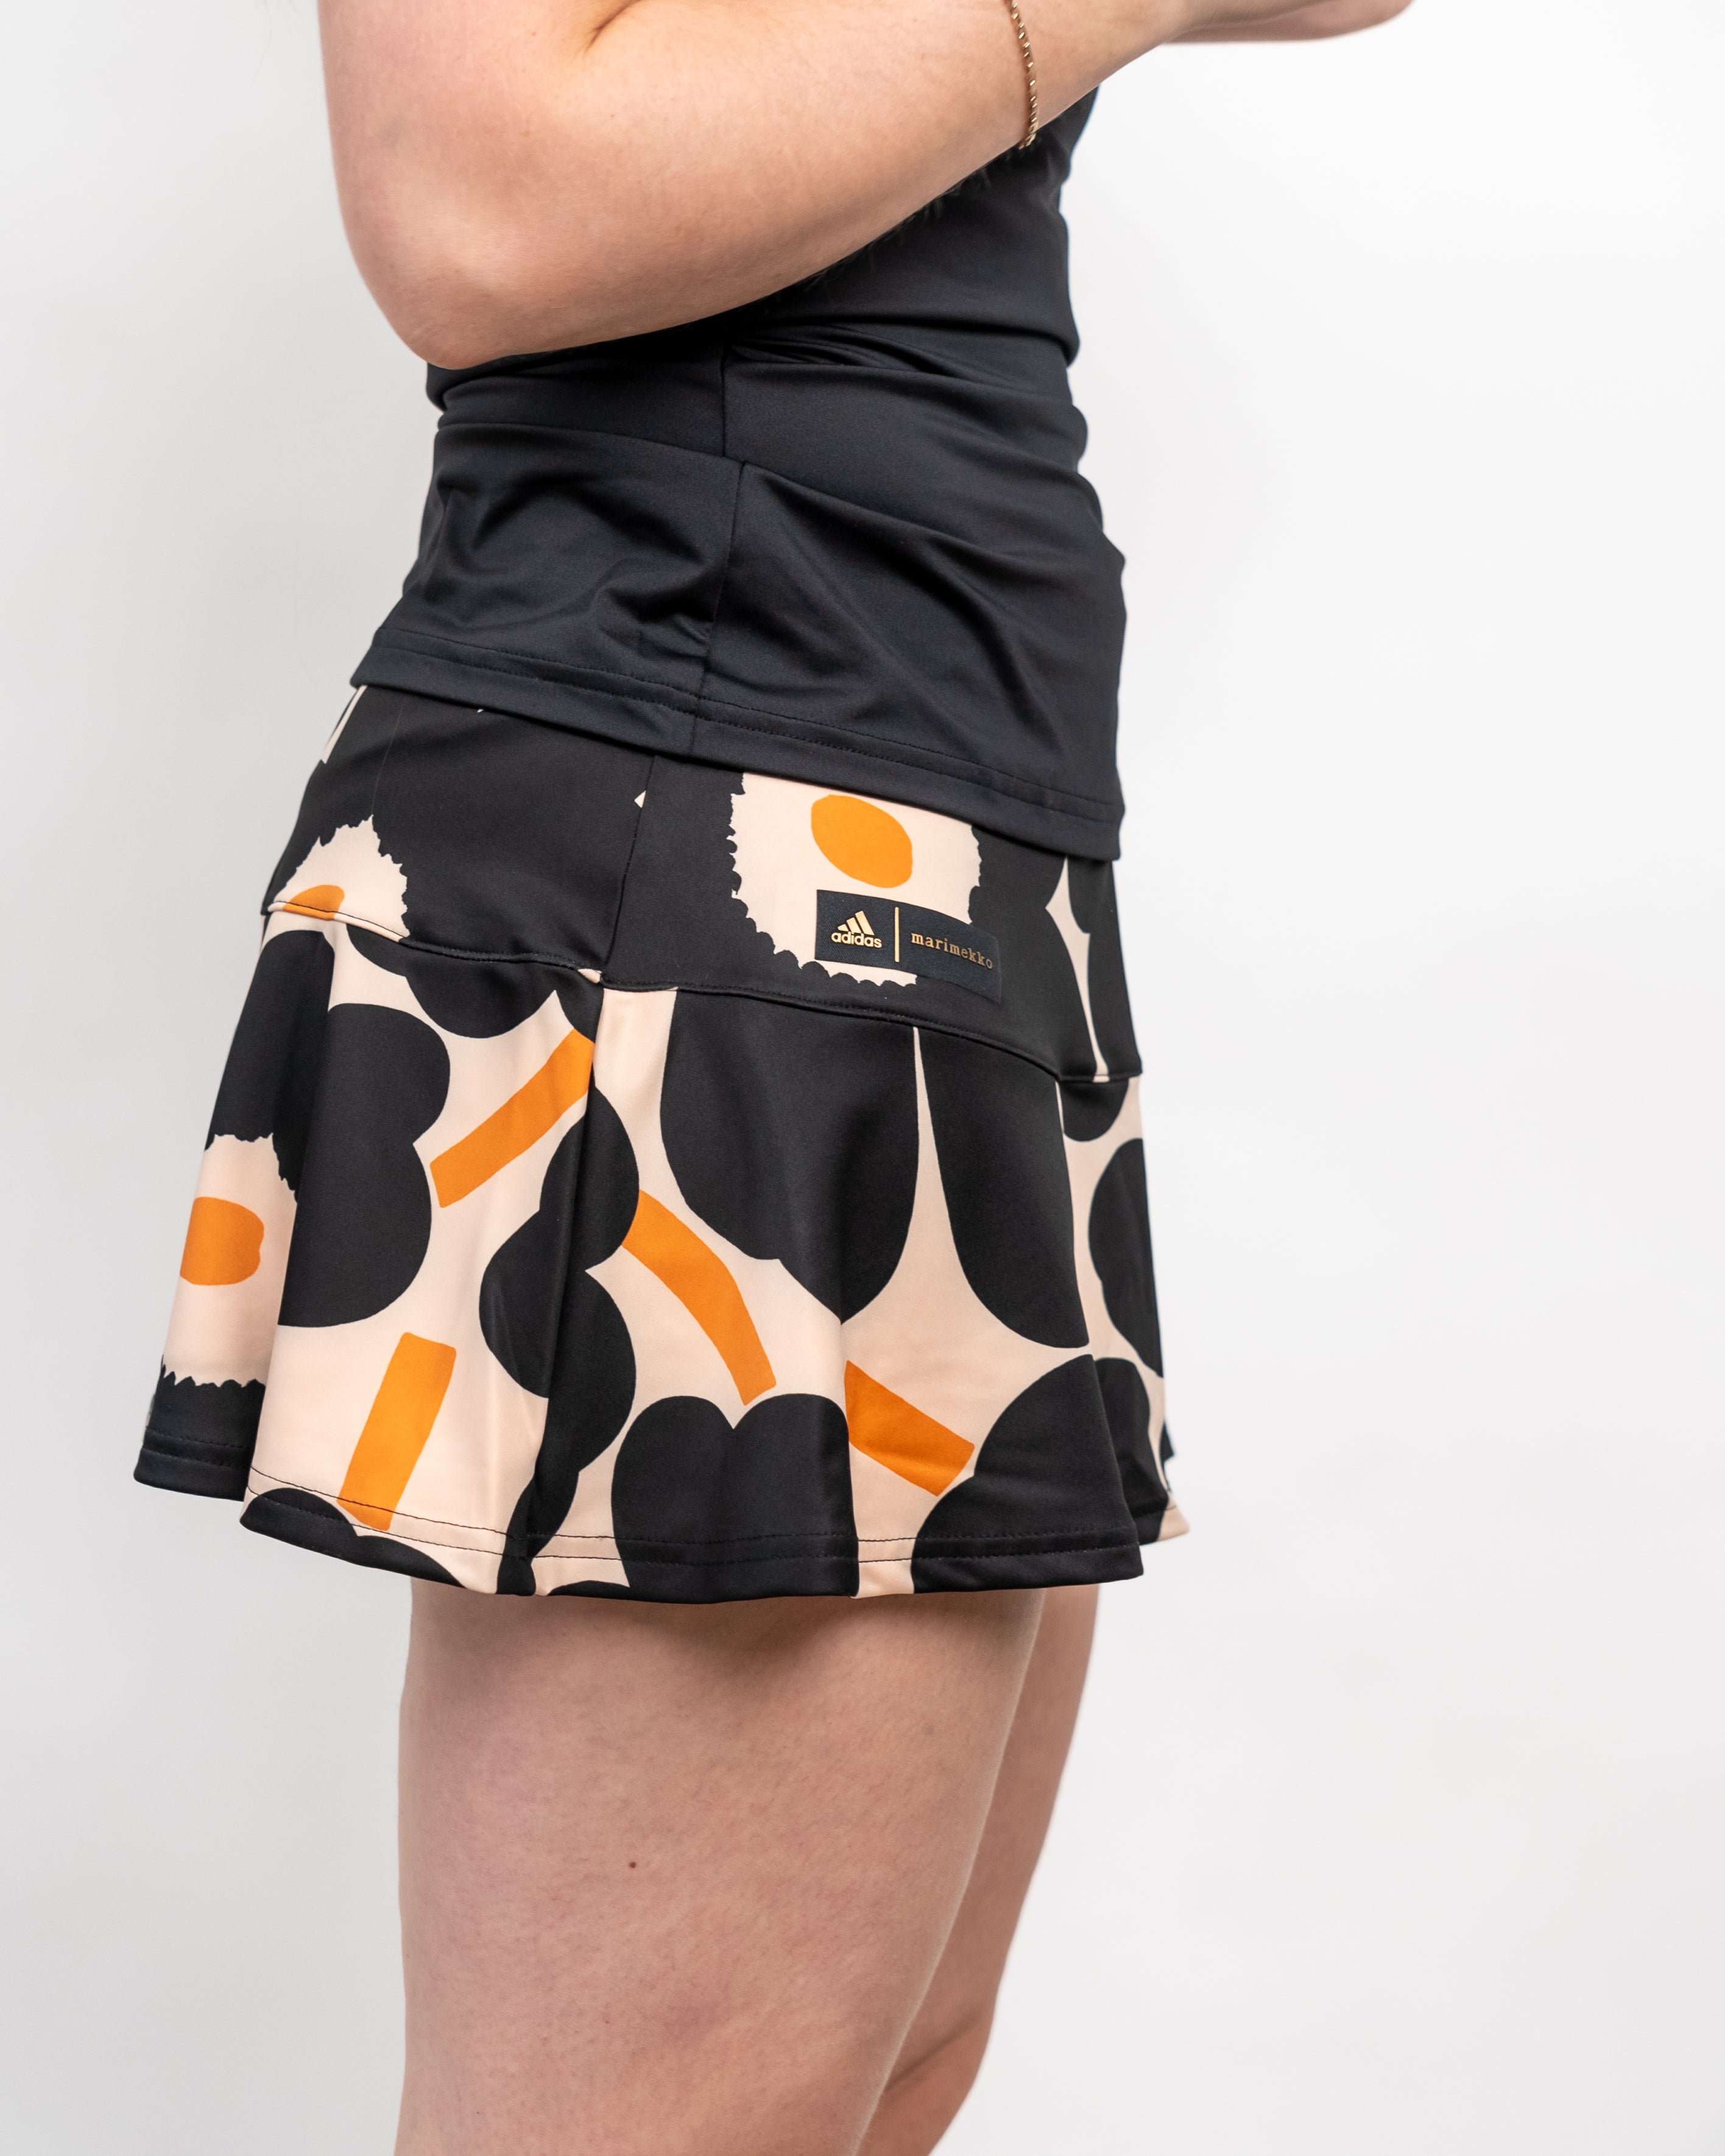 Adidas Women's Marimekko Match Skirt